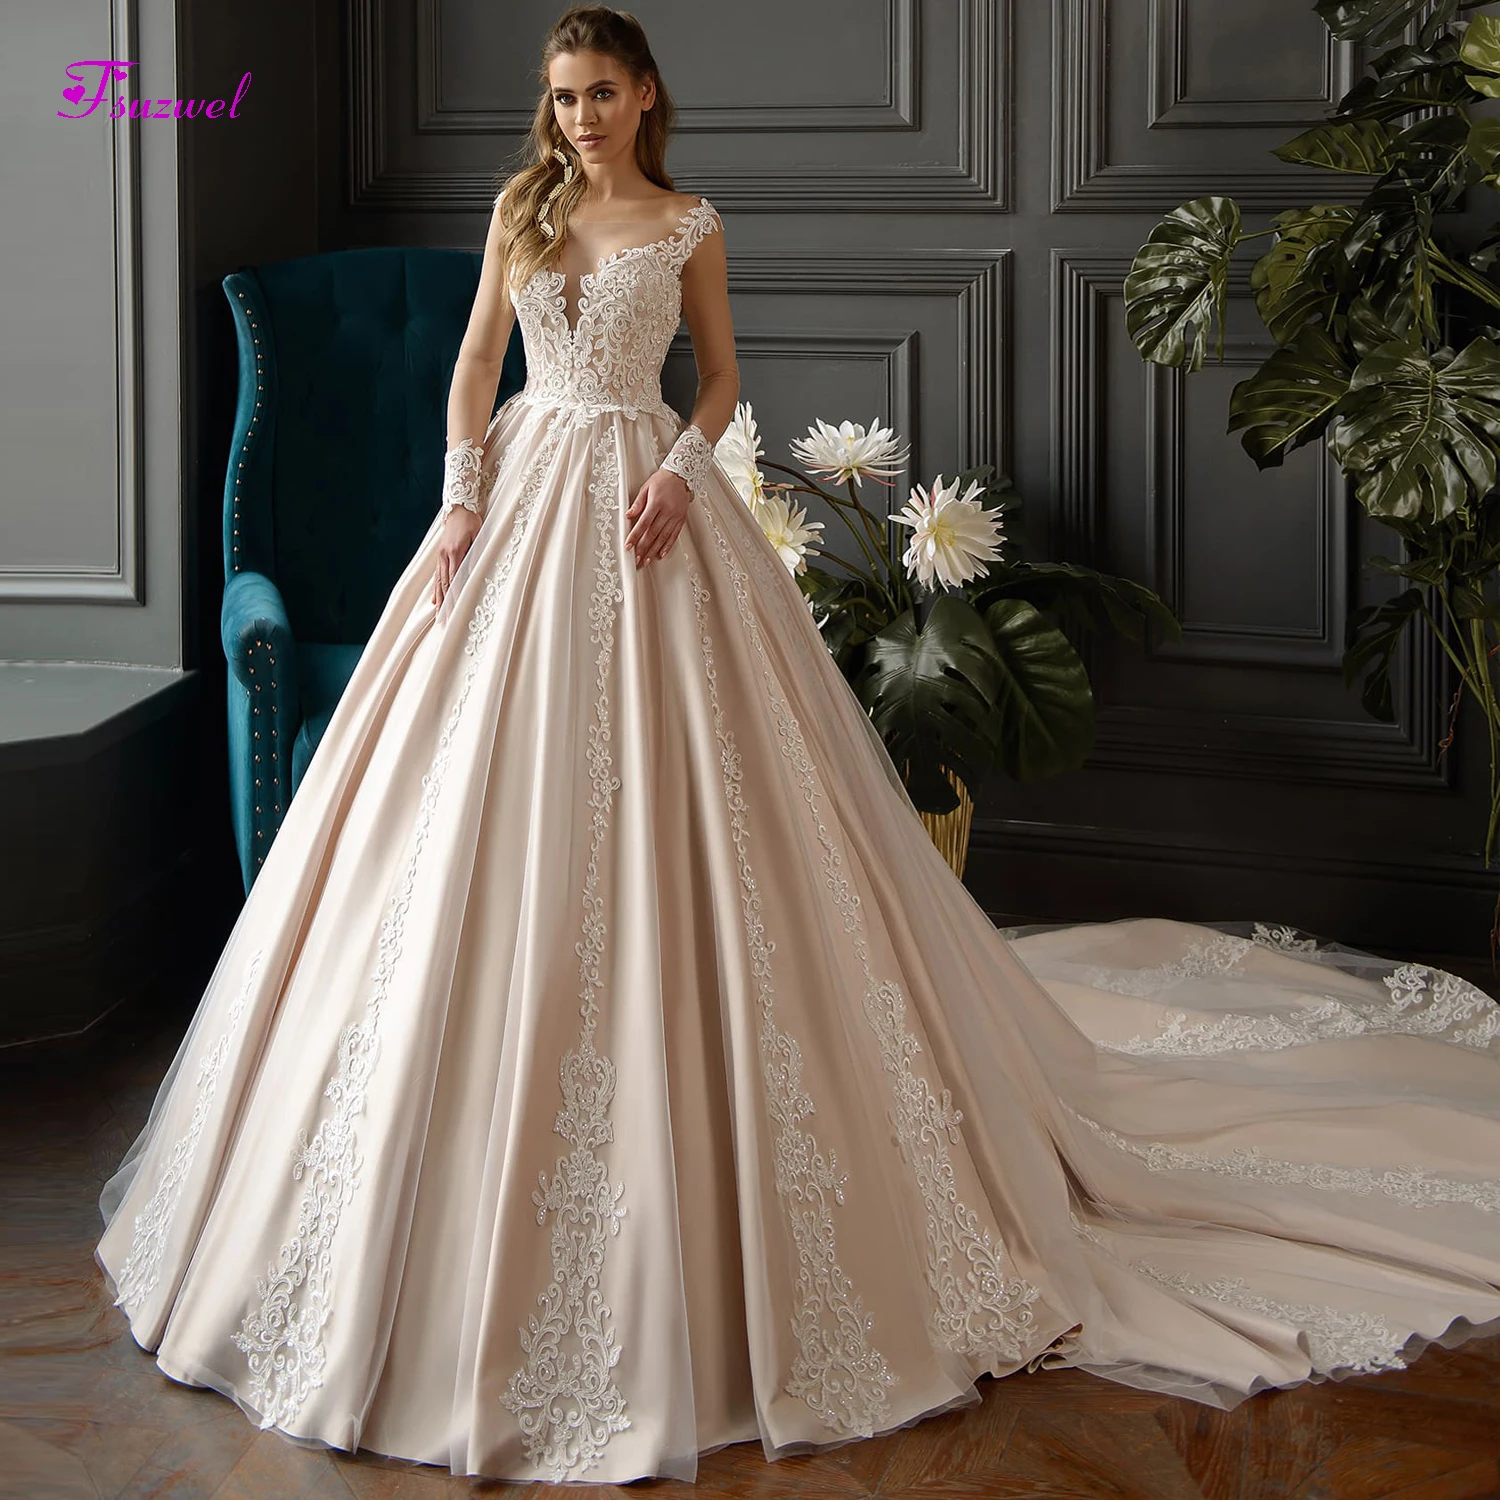 Fsuzwel/великолепные атласные свадебные платья трапециевидной формы с аппликацией и шлейфом ; Свадебные платья «Принцесса» с круглым вырезом и рукавами-крылышками; большие размеры